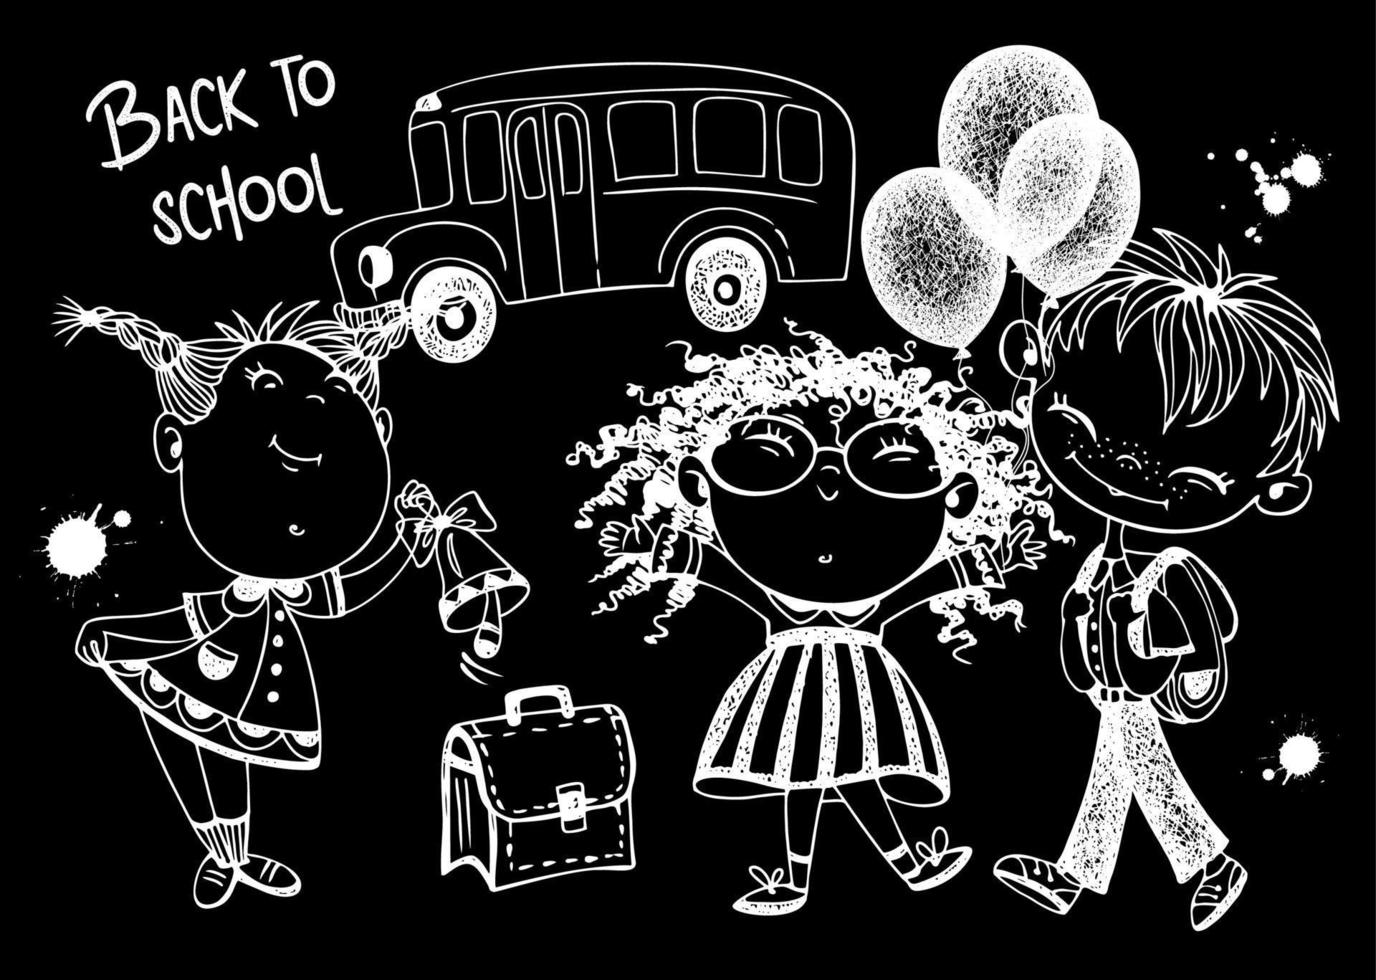 les écoliers mignons avec des ballons et une mallette vont à l'école. retour à l'école. bus scolaire.dessin à la craie sur un tableau noir. vecteur